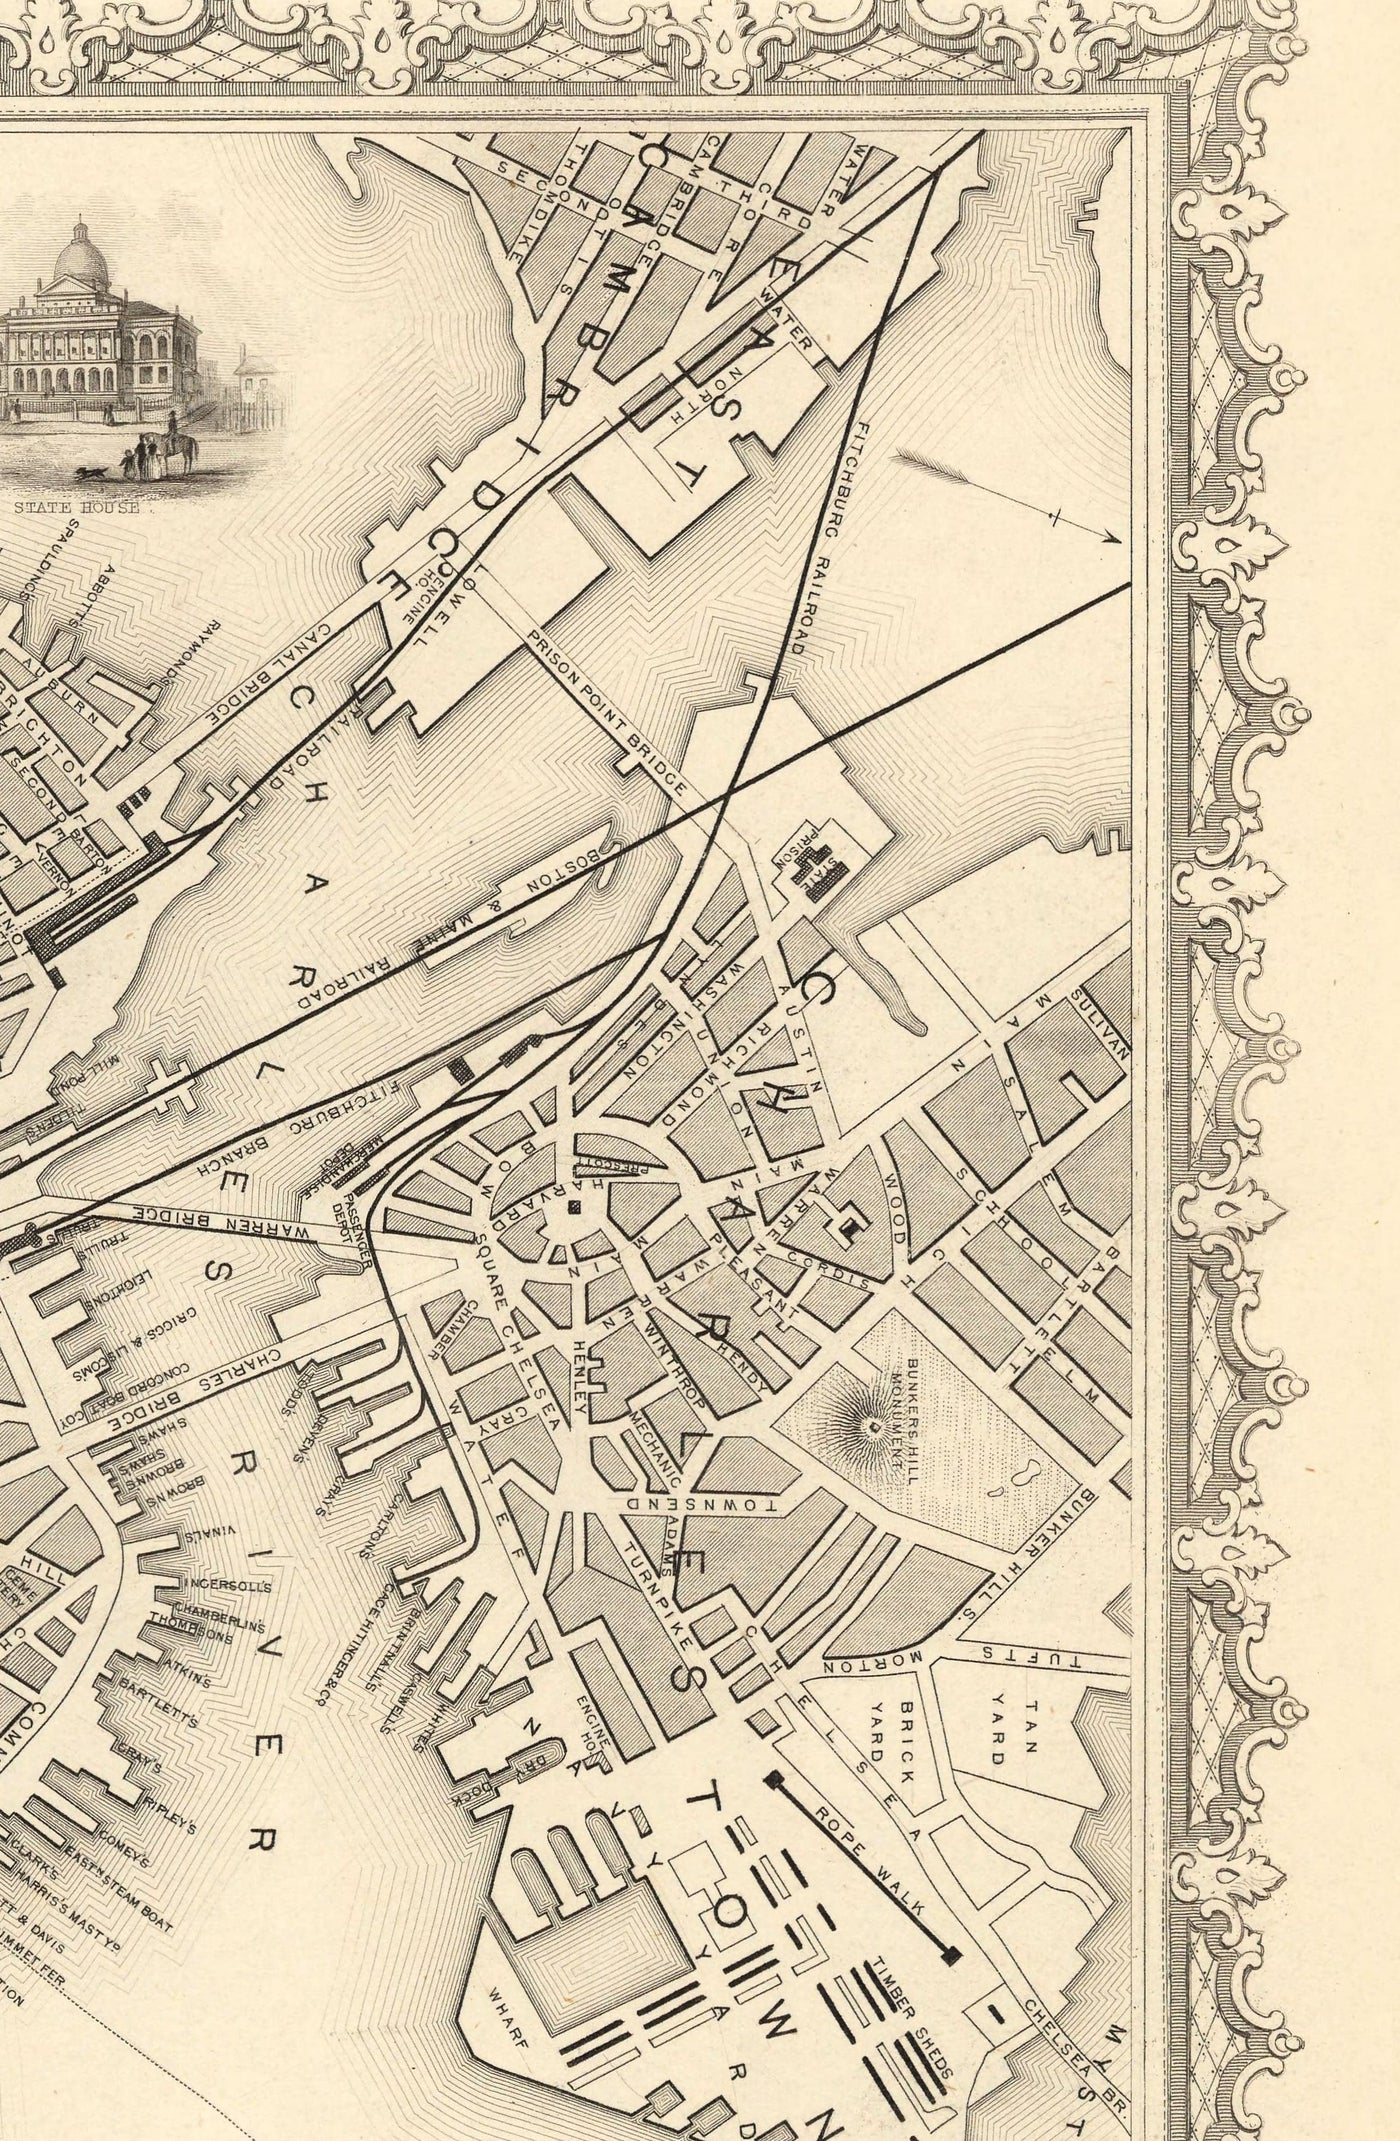 Old Map of Boston, Massachusetts in 1851 by Tallis & Rapkin